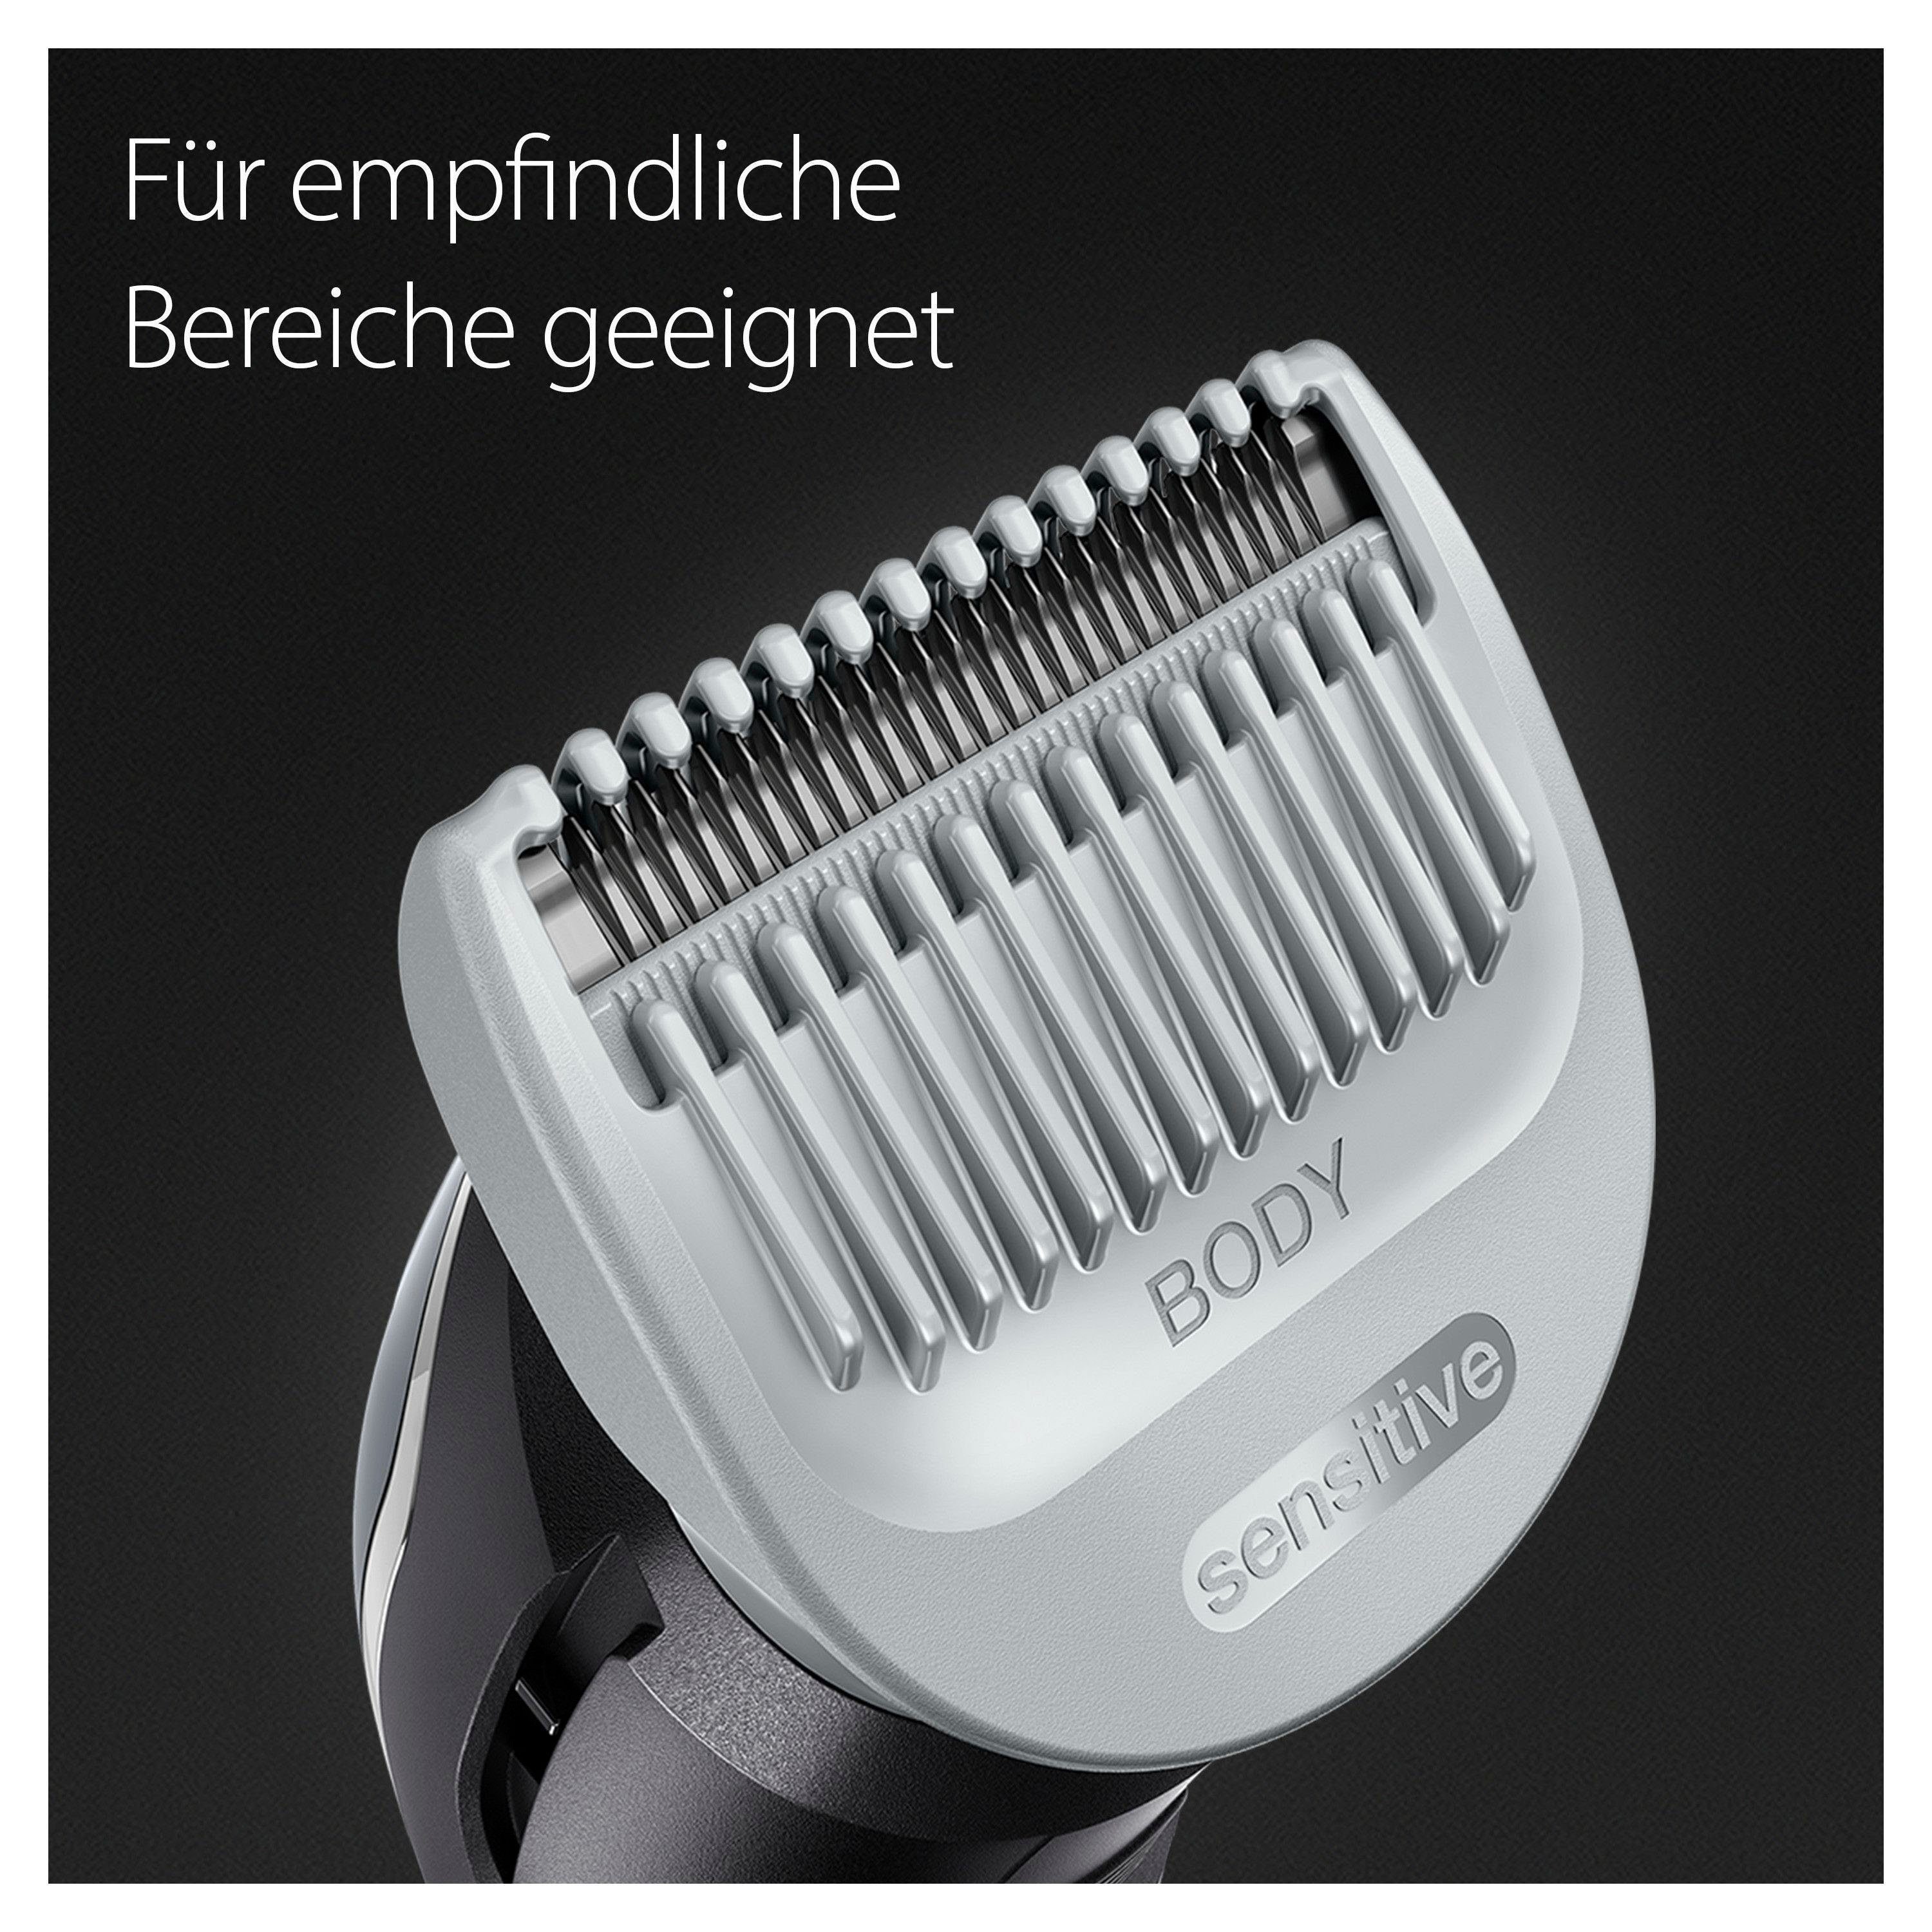 Bodygroomer SkinShield-Technologie, Braun BG3340, Haarschneider Abwaschbar